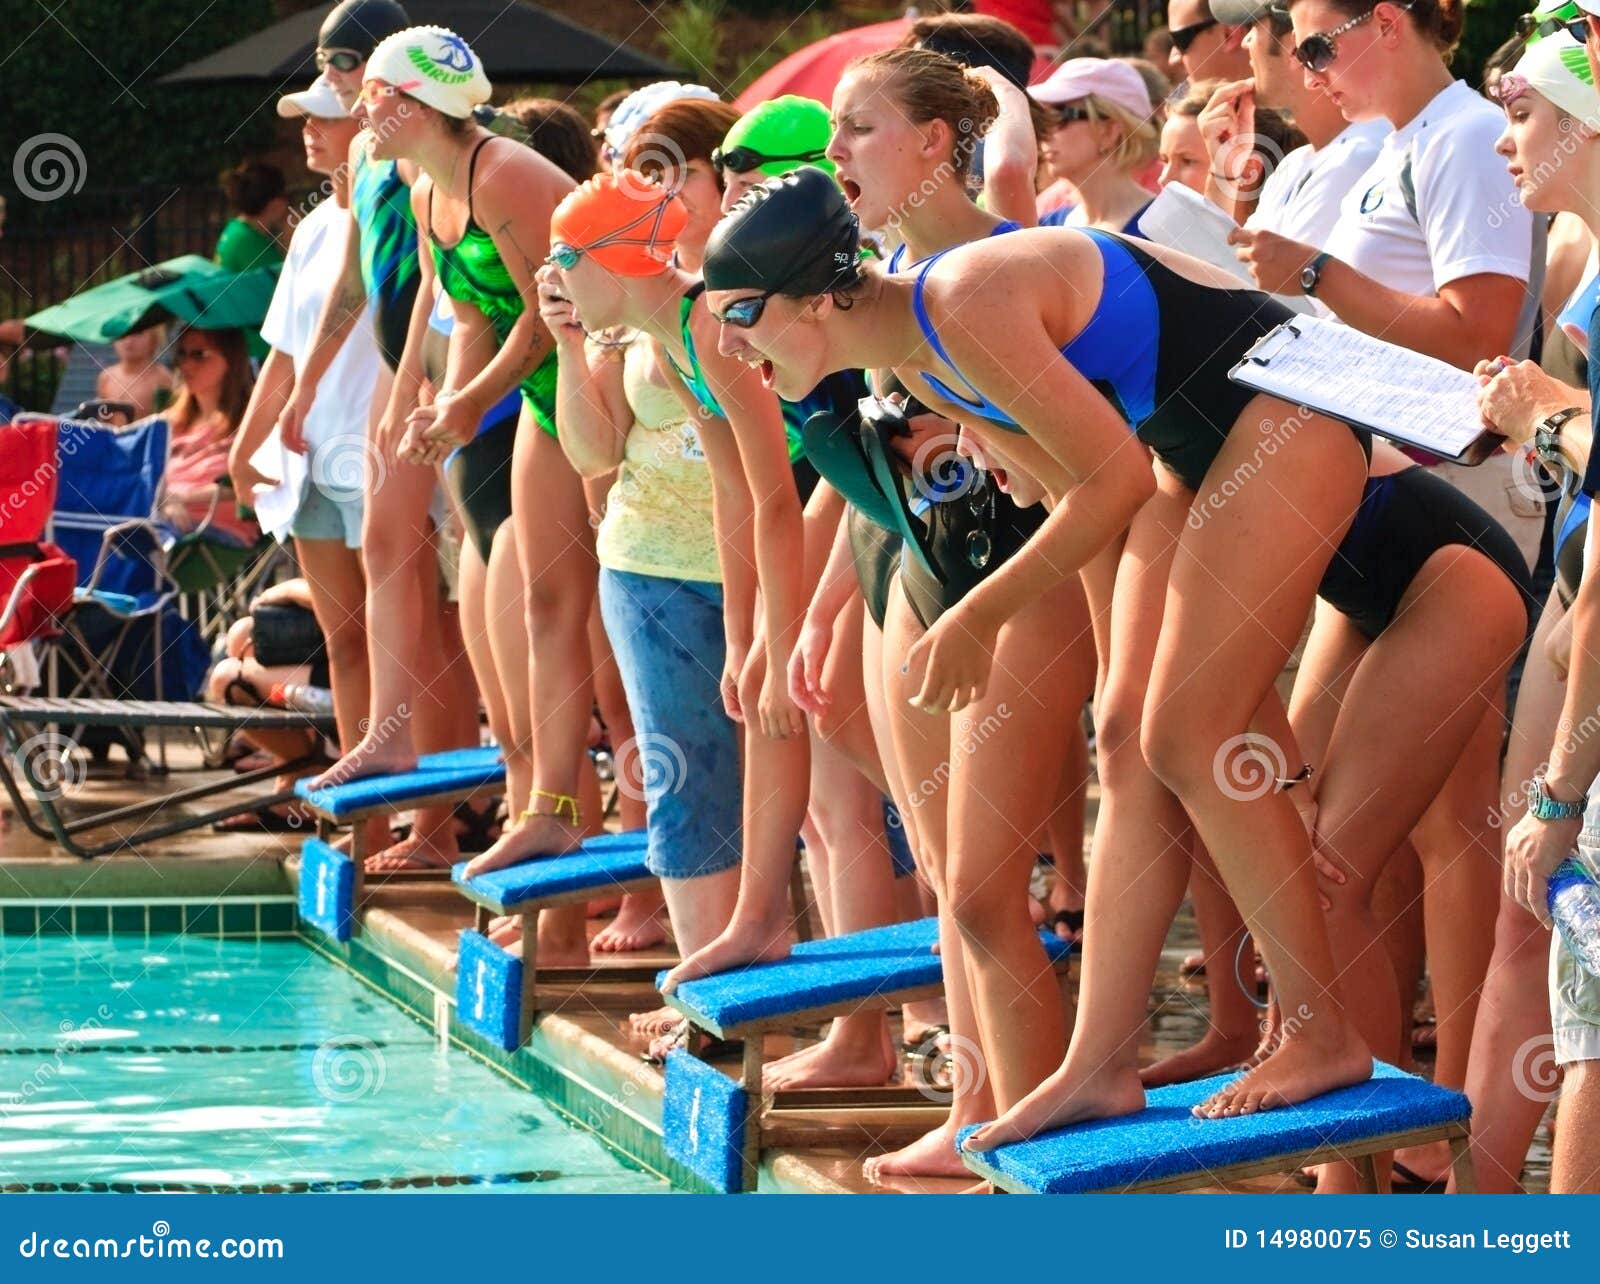 swim-meet-competition-teen-girls-14980075.jpg